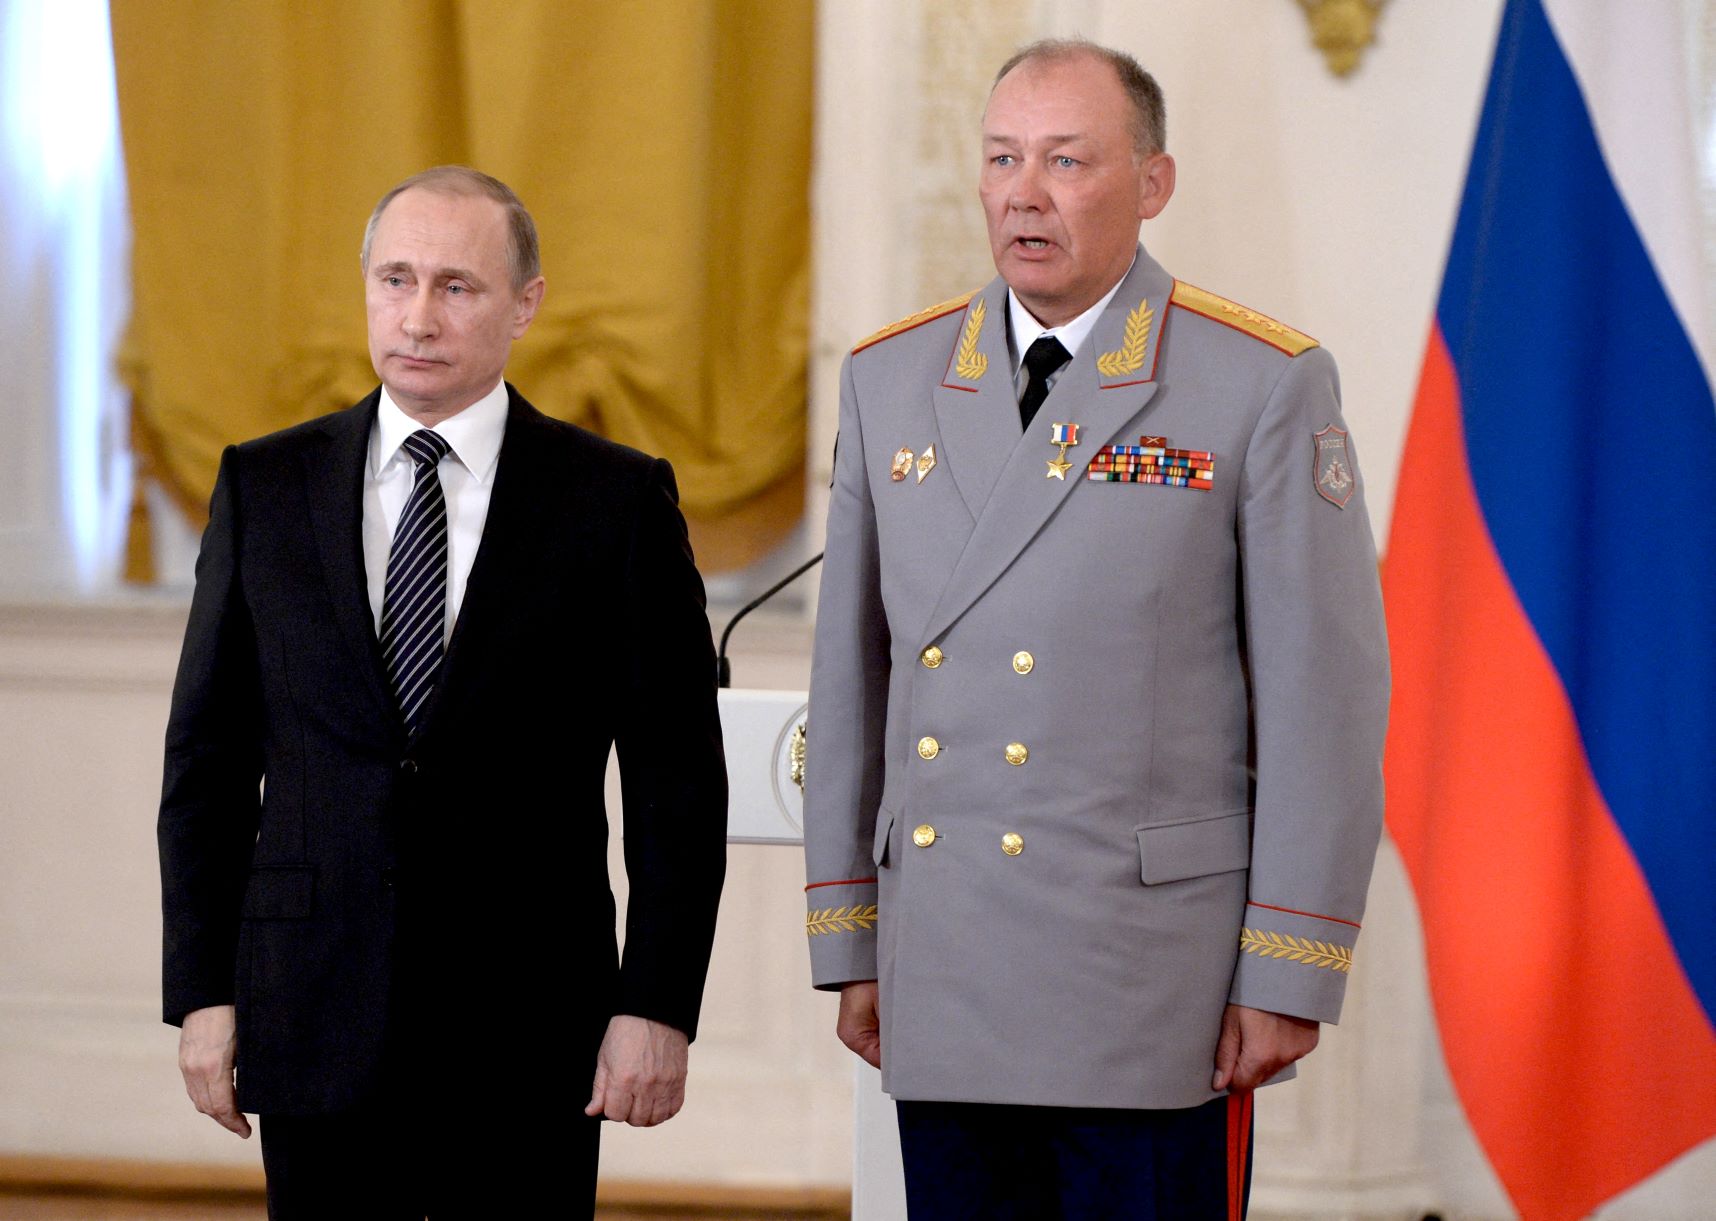 الرئيس الروسي فلاديمير بوتين كرم مساعده الأول للشؤون العسكرية المركزية الجنرال آلكسندر دفورنيكوف بمنحه لقب "بطل الاتحاد الروسي". موسكو، بتاريخ 17 مارس (آذار) 2022